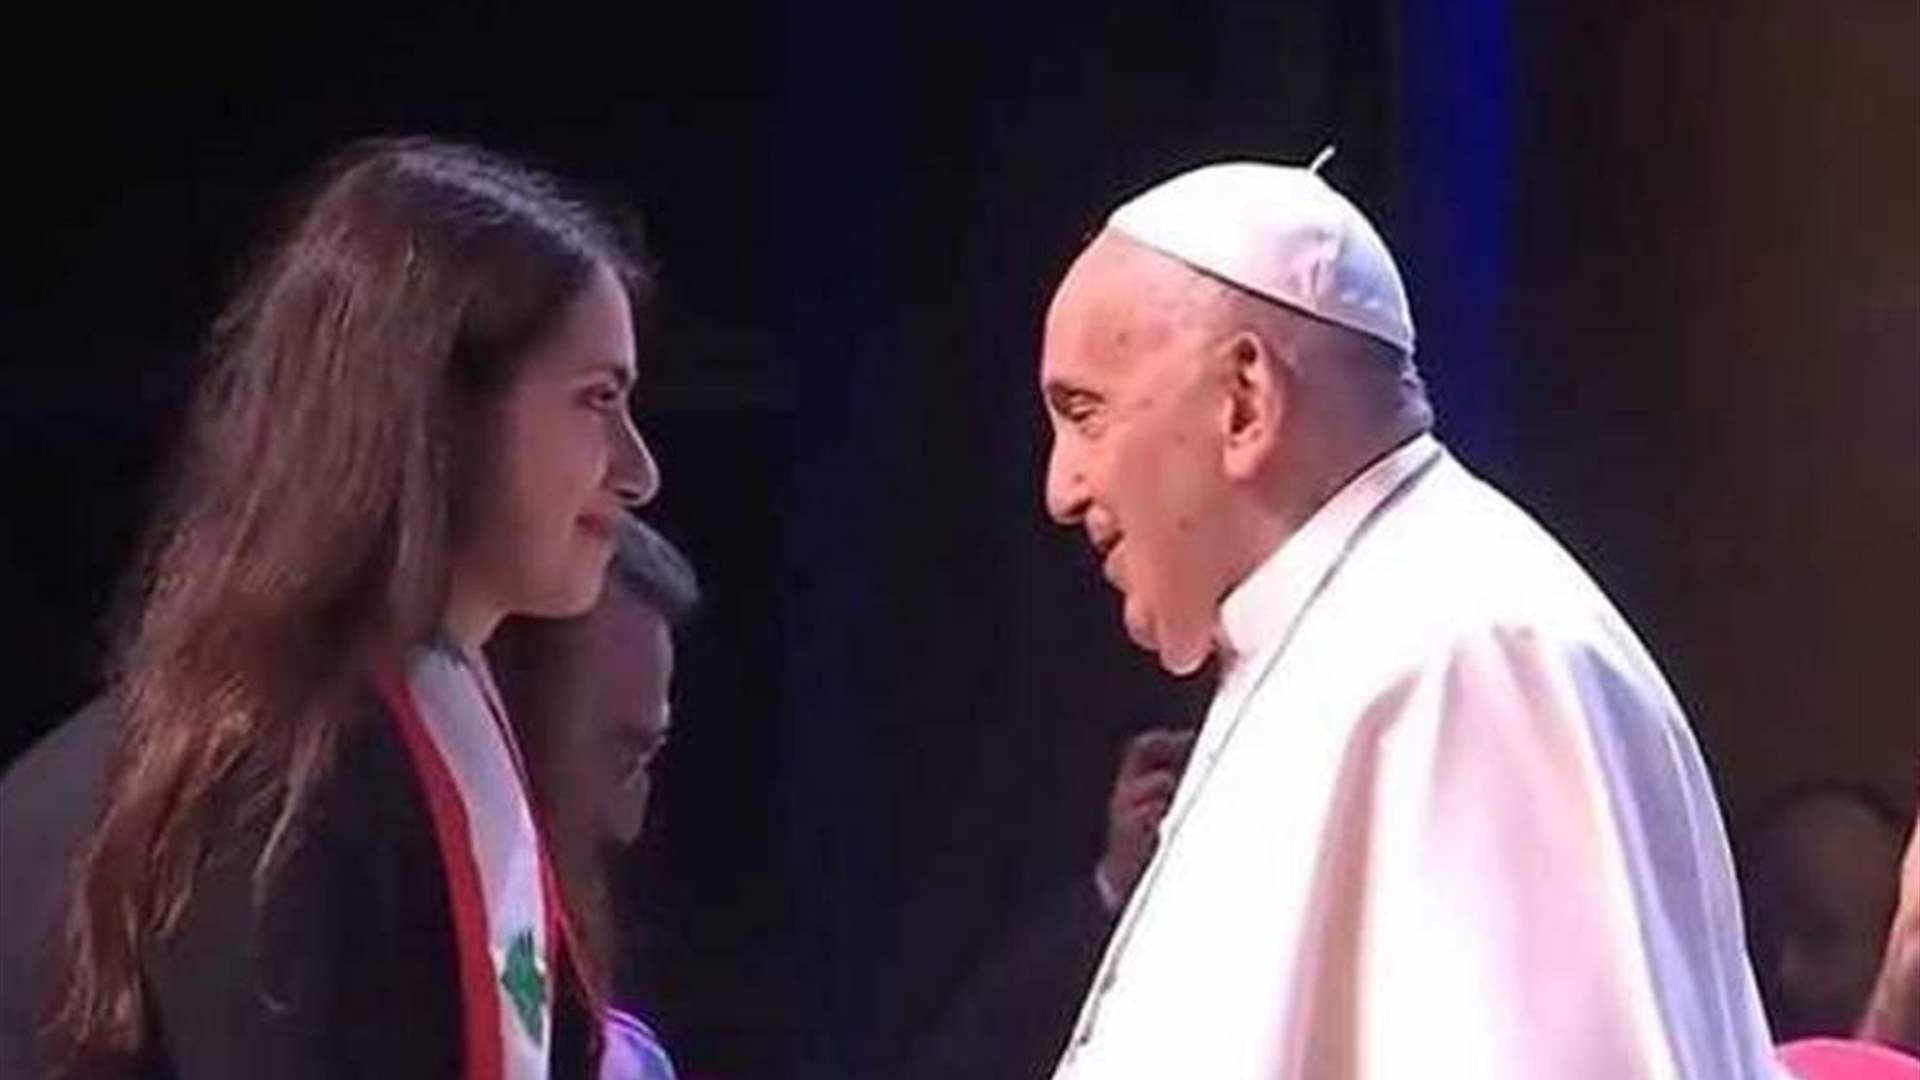 الشابة اللبنانية ديانا أبي نادر ترنّم باللغة السريانية أمام البابا فرنسيس (فيديو)